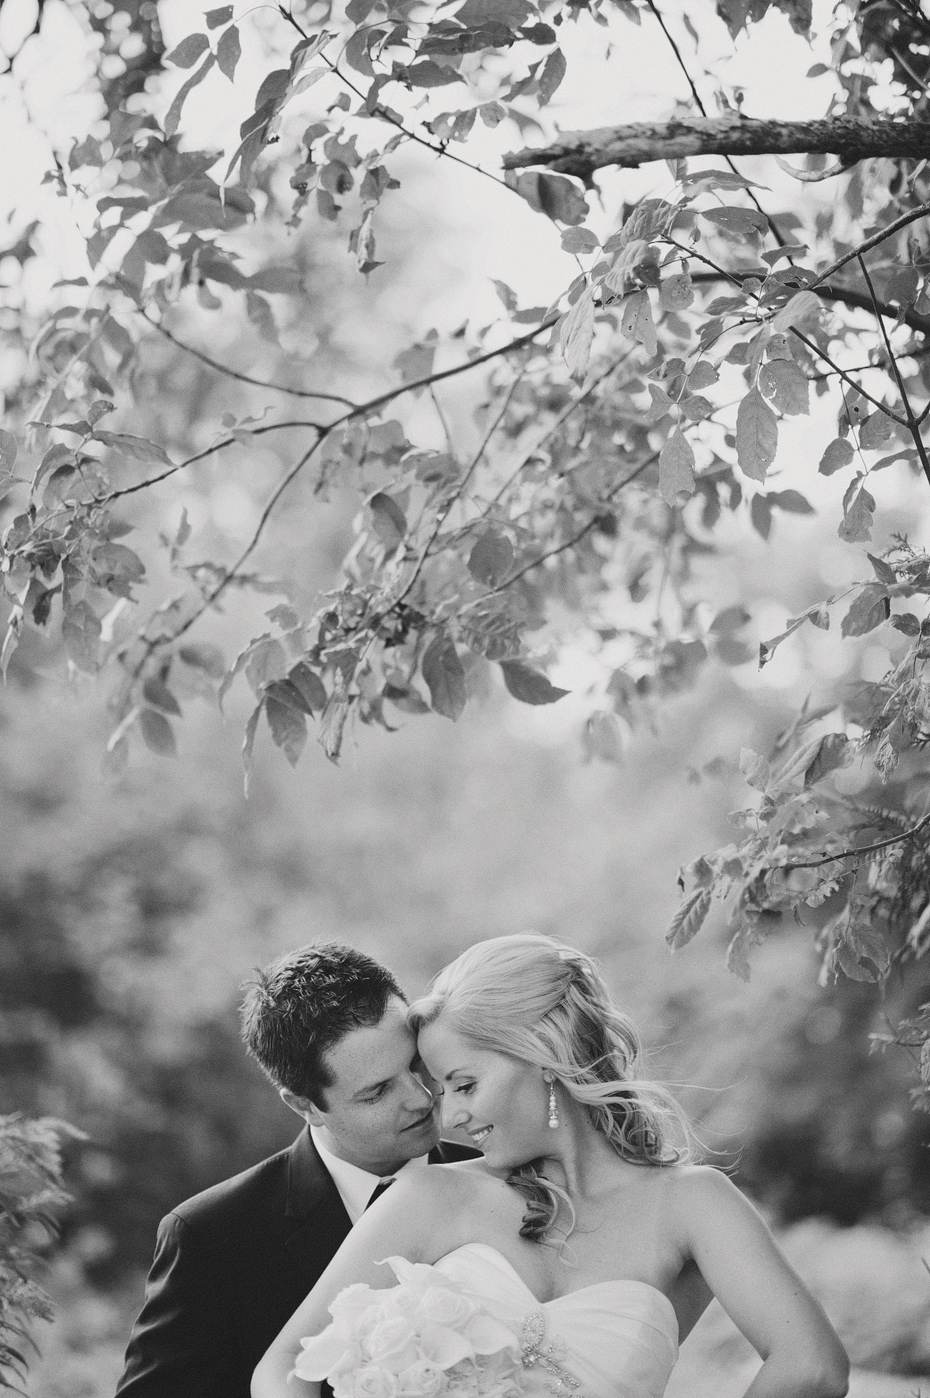 Sara and Tyler - Wedding (Quispamsis, NB)